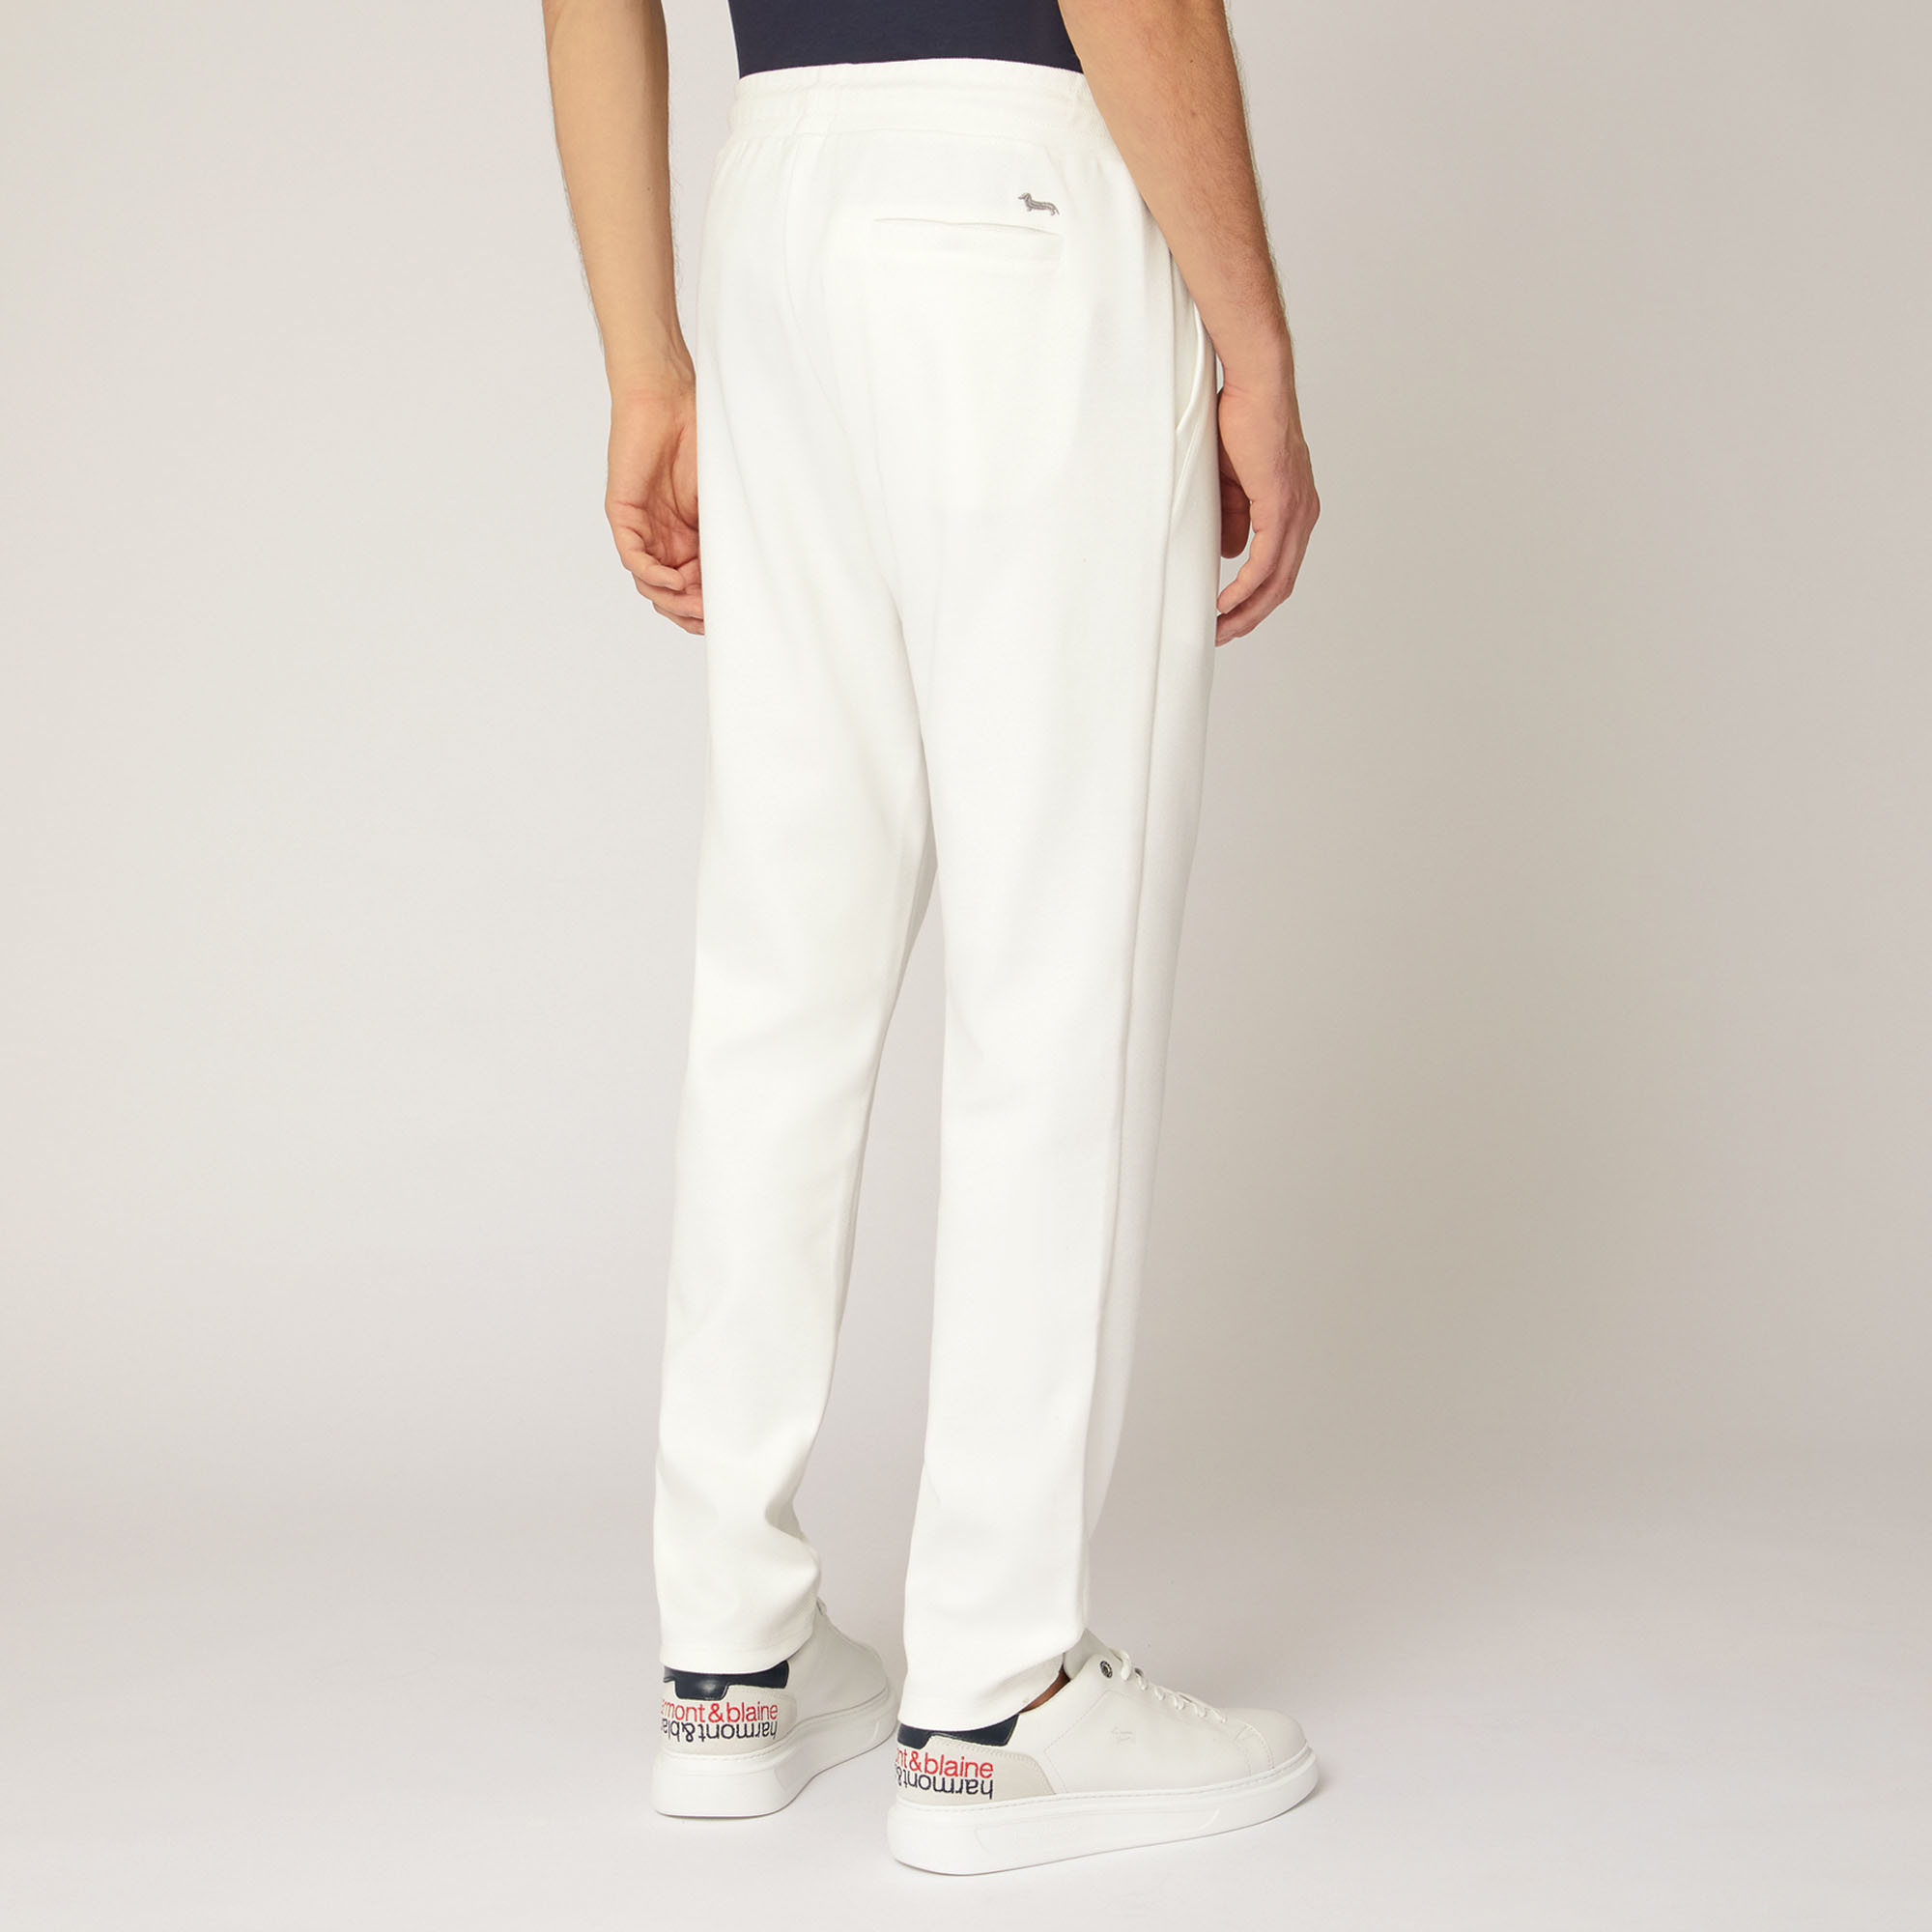 Hose aus Stretch-Baumwolle mit Tasche hinten, Weiß, large image number 1